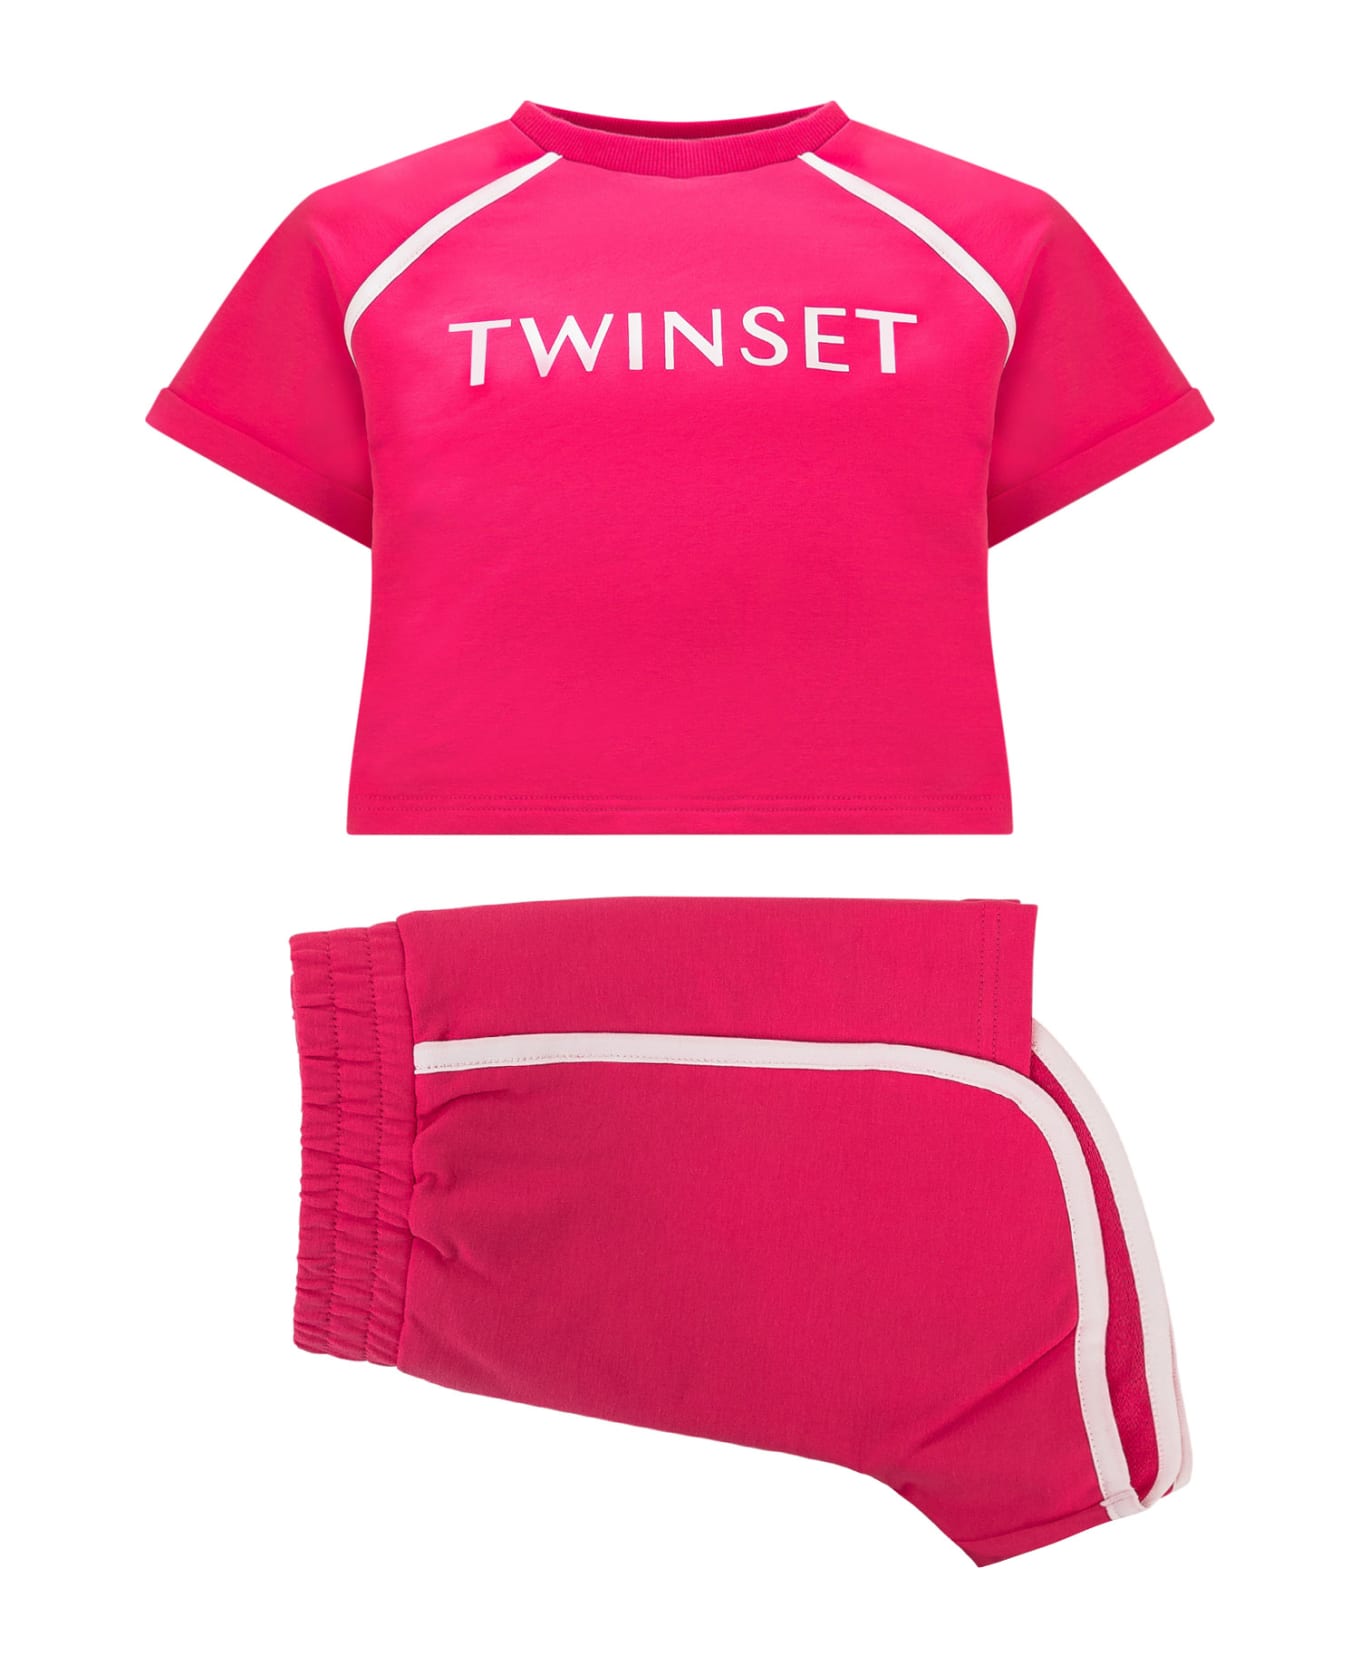 TwinSet T-shirt And Shorts Set - Fuchsia